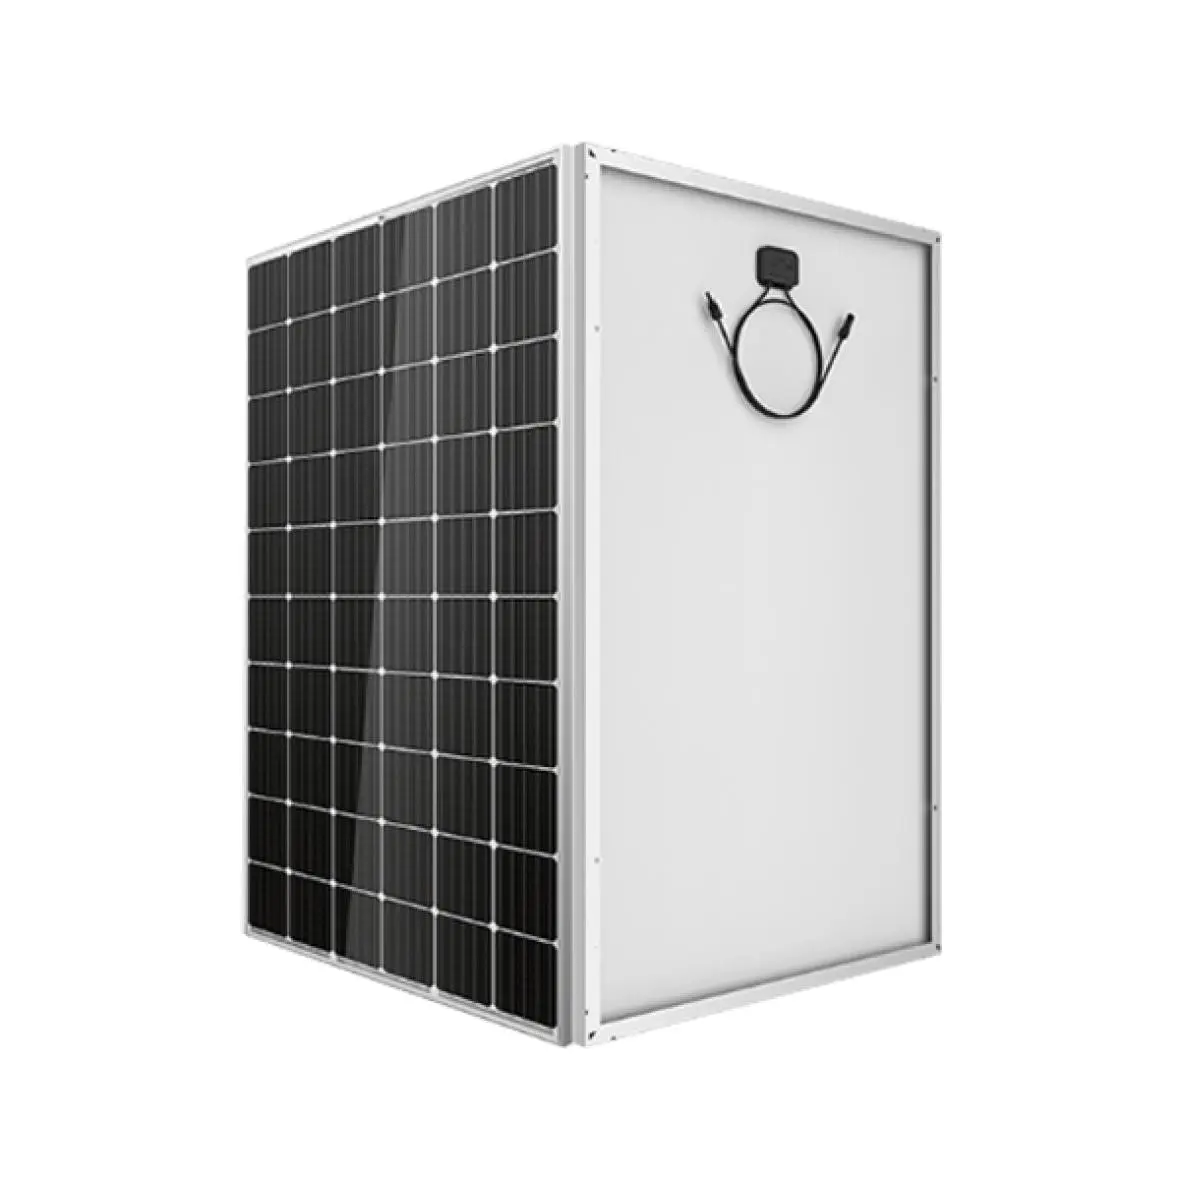 Solar panel Poly Herstellung Solar panel Preis Poly 300W 330W 340W 350W Poly kristalline Solarpanels Kosten